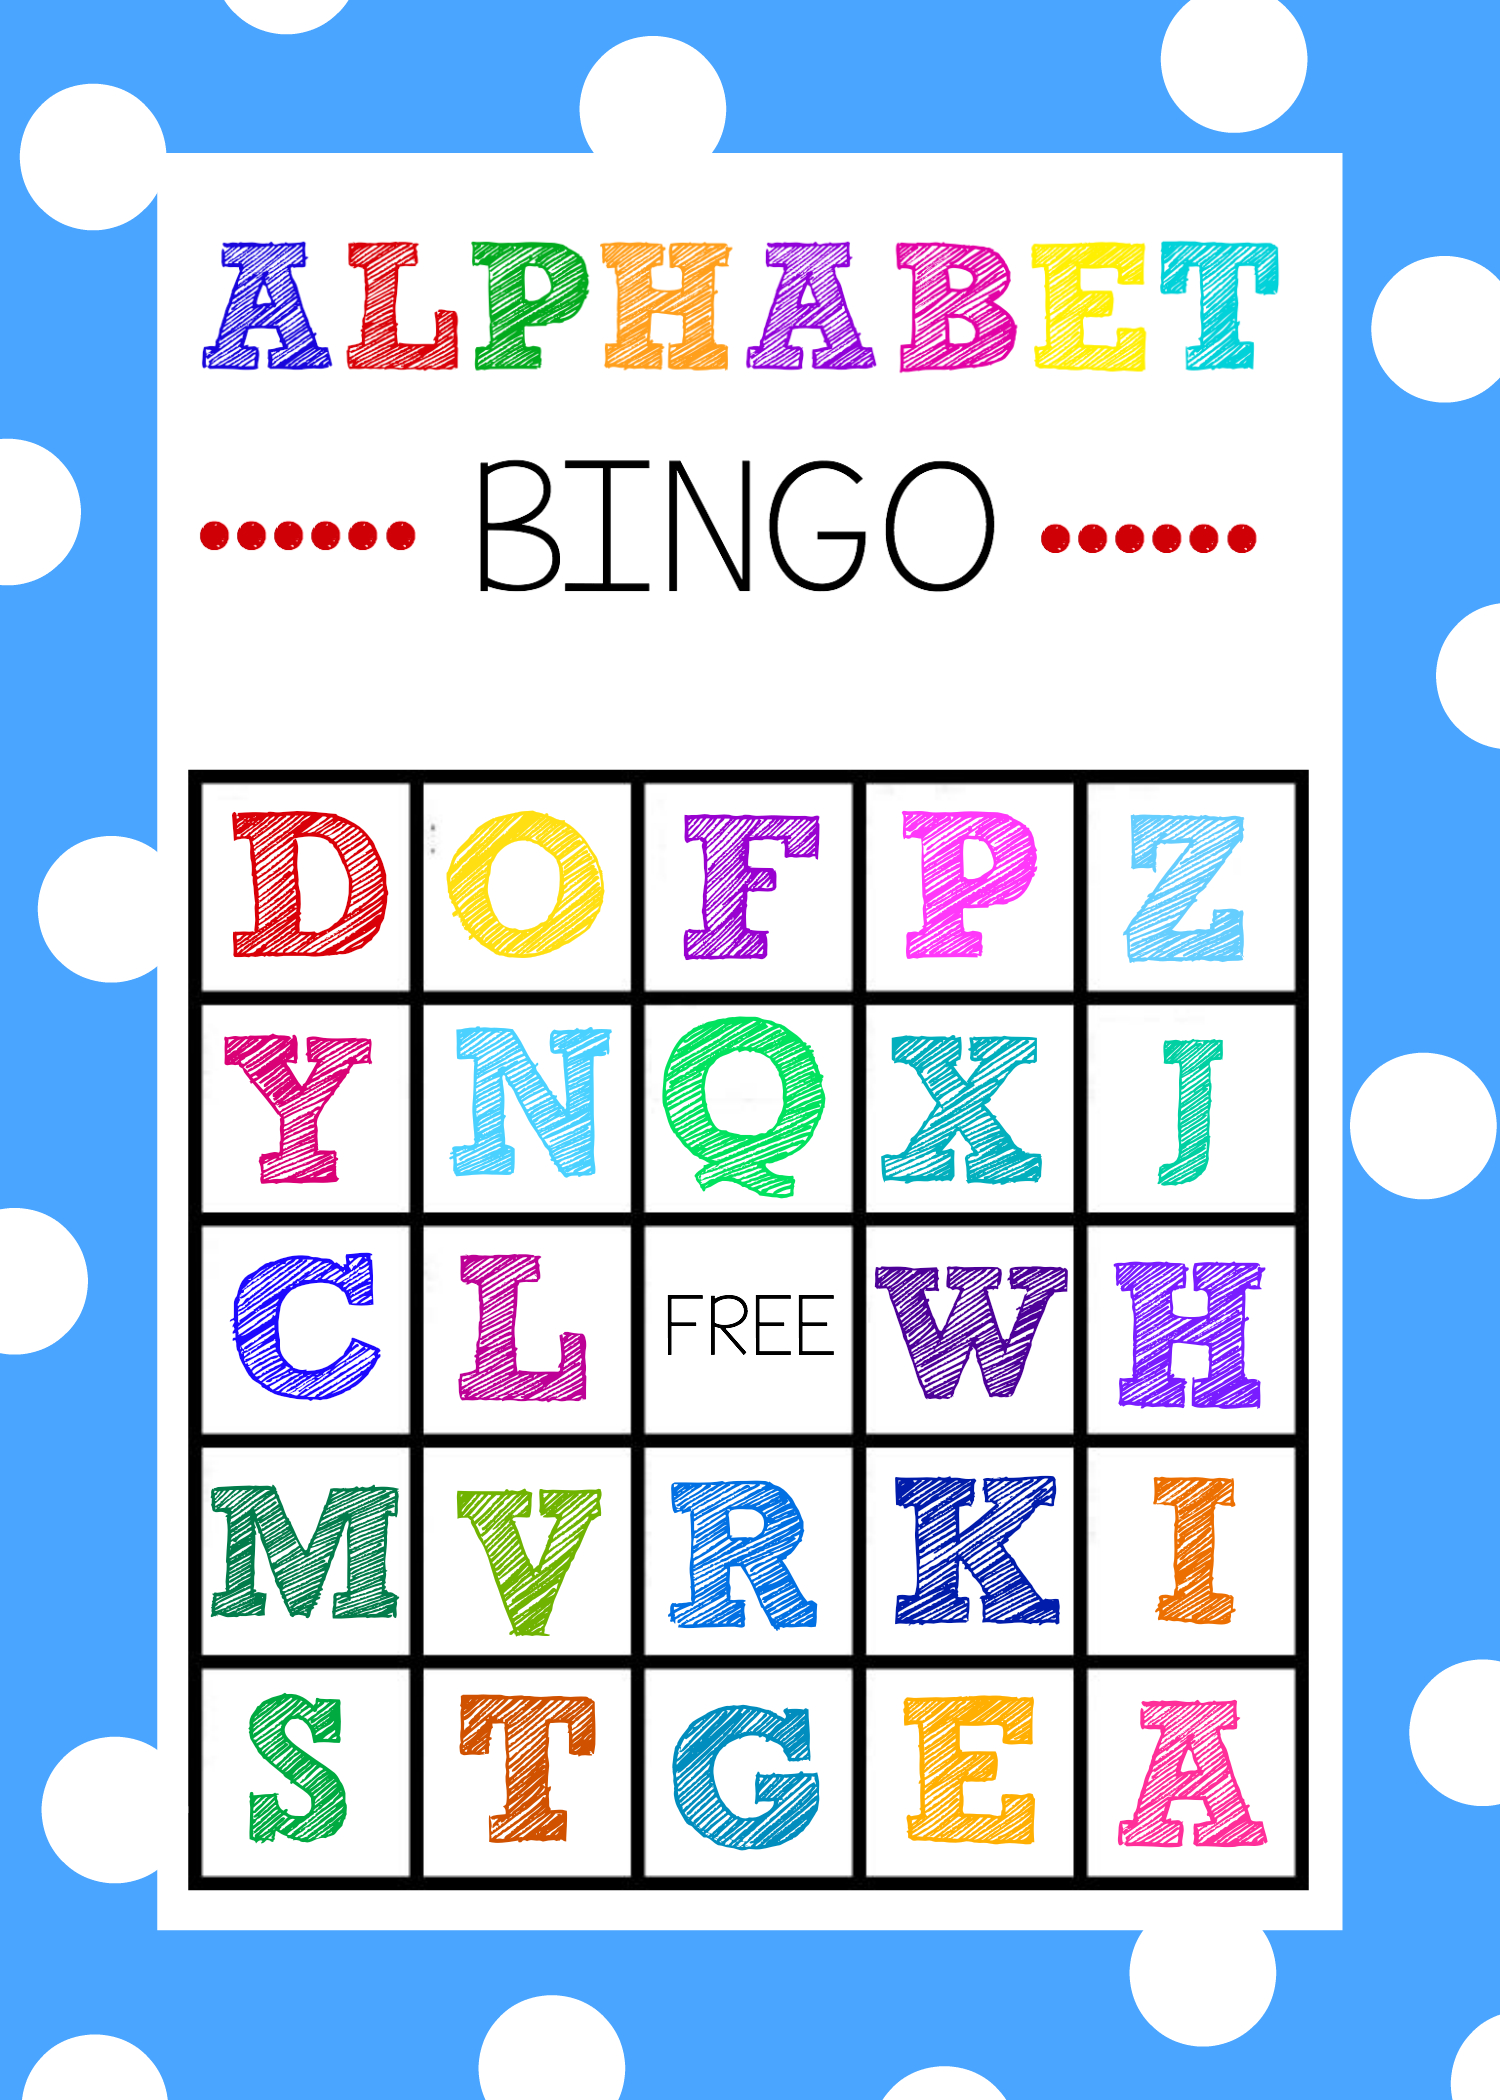 Free Printable Alphabet Bingo Game - Free Printable Bingo Games